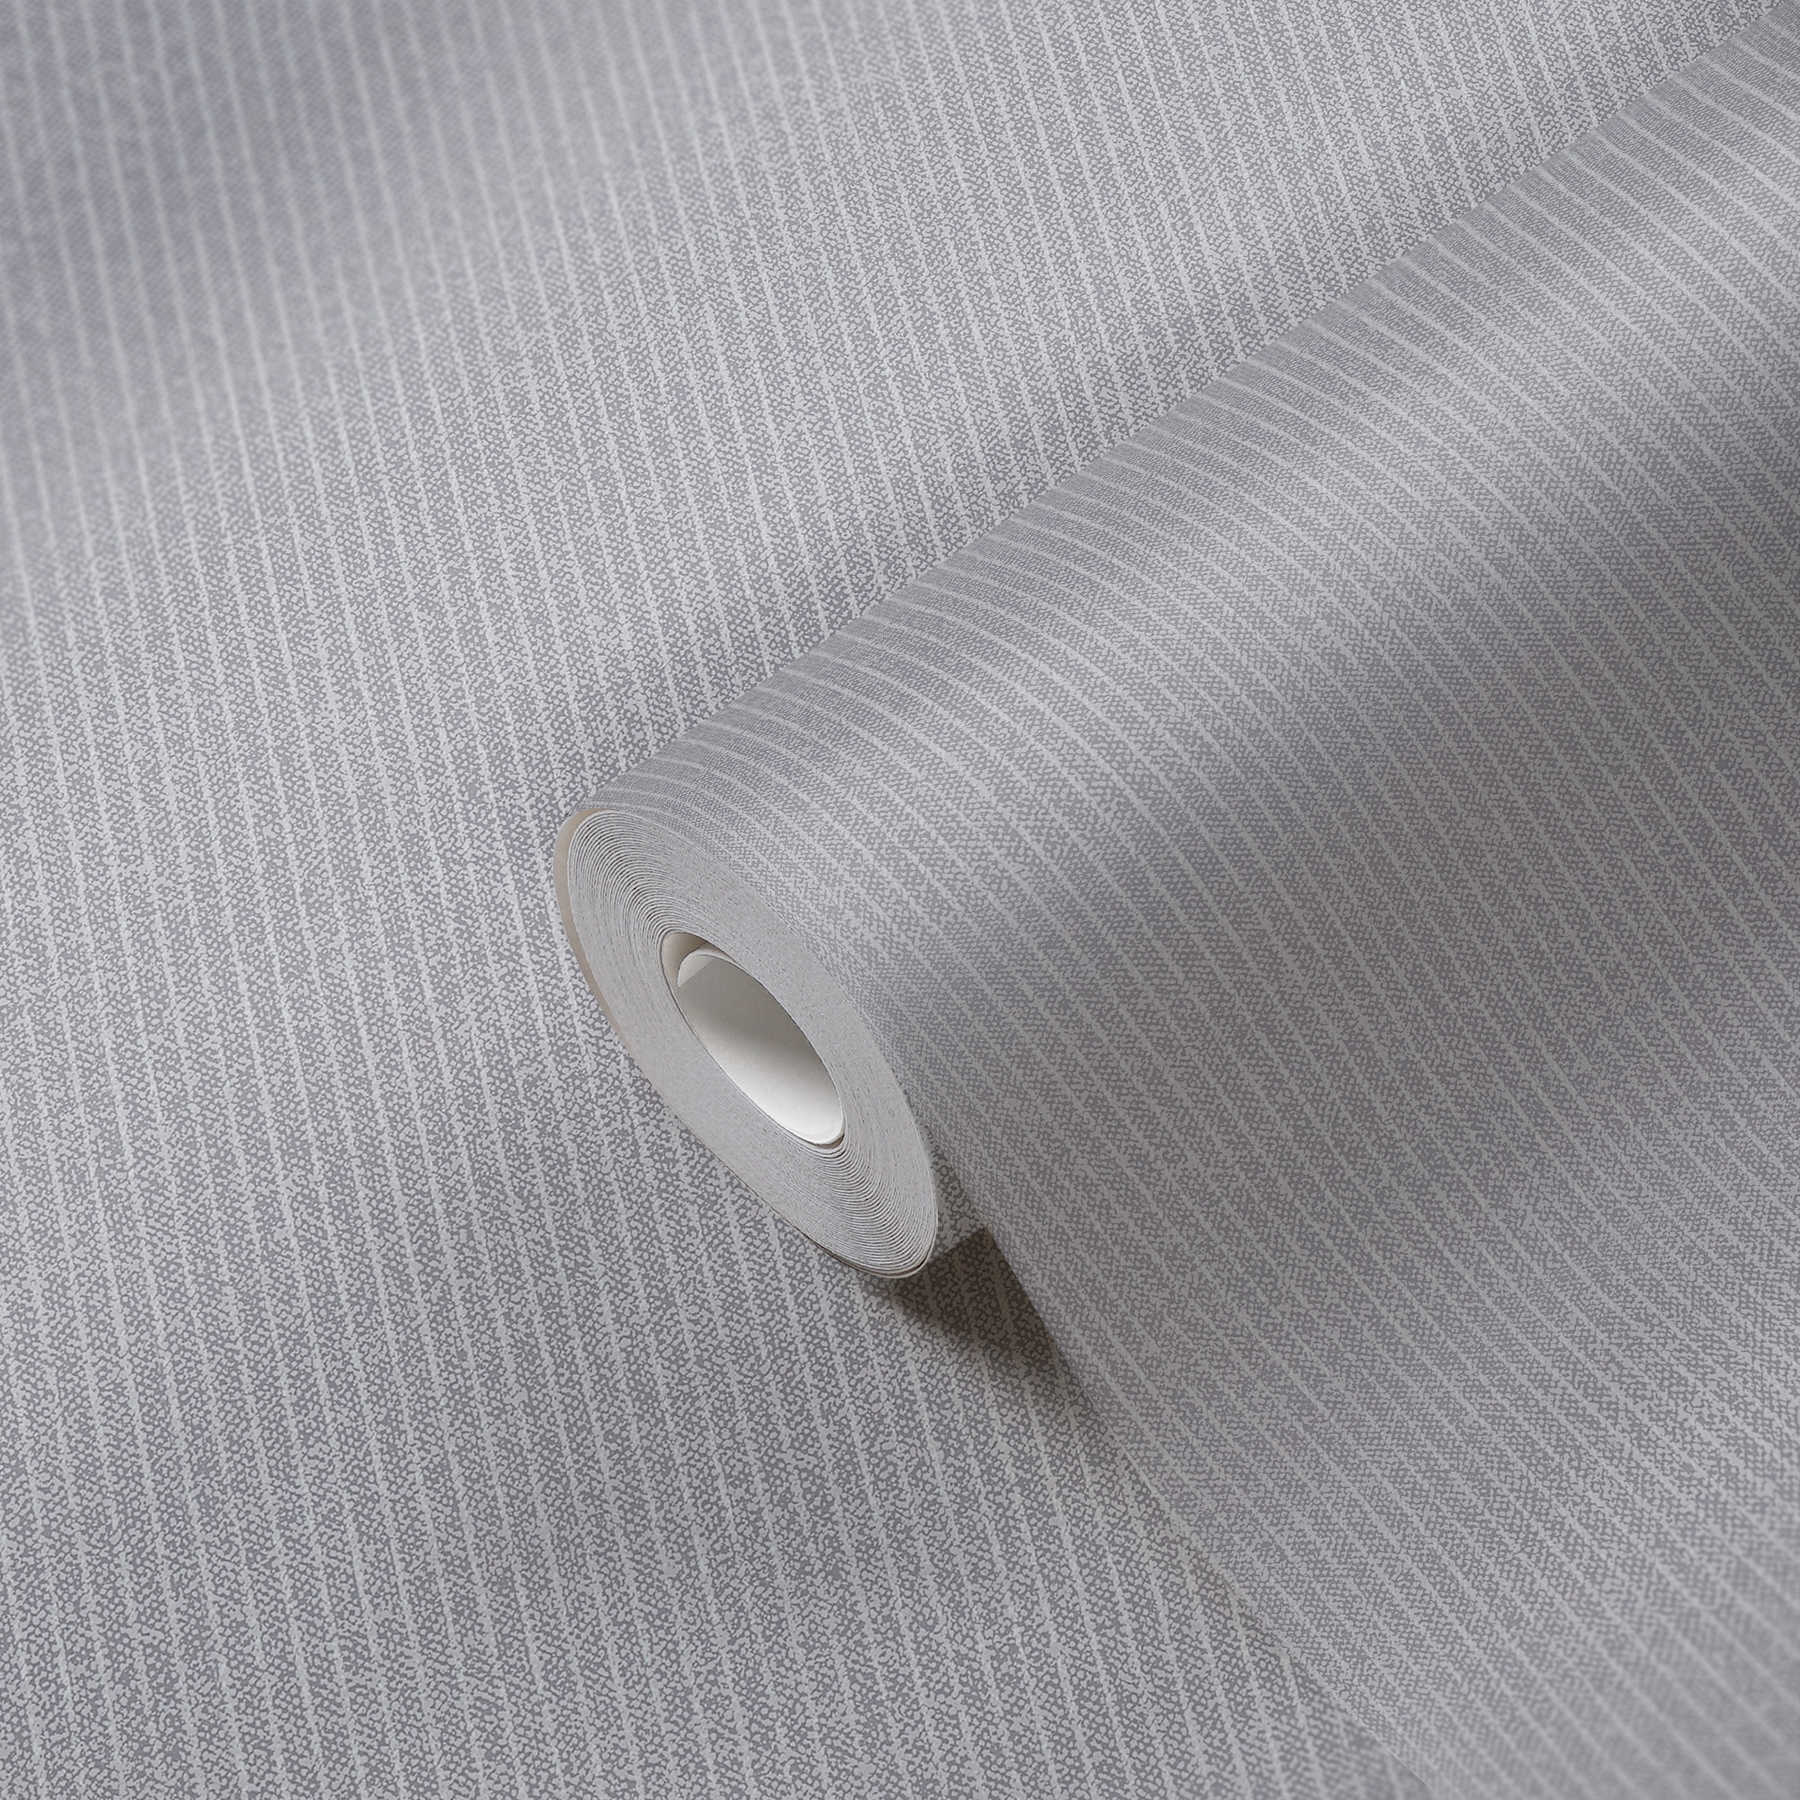             Linierte Tapete schmalen Streifen im Textil-Look – Grau
        